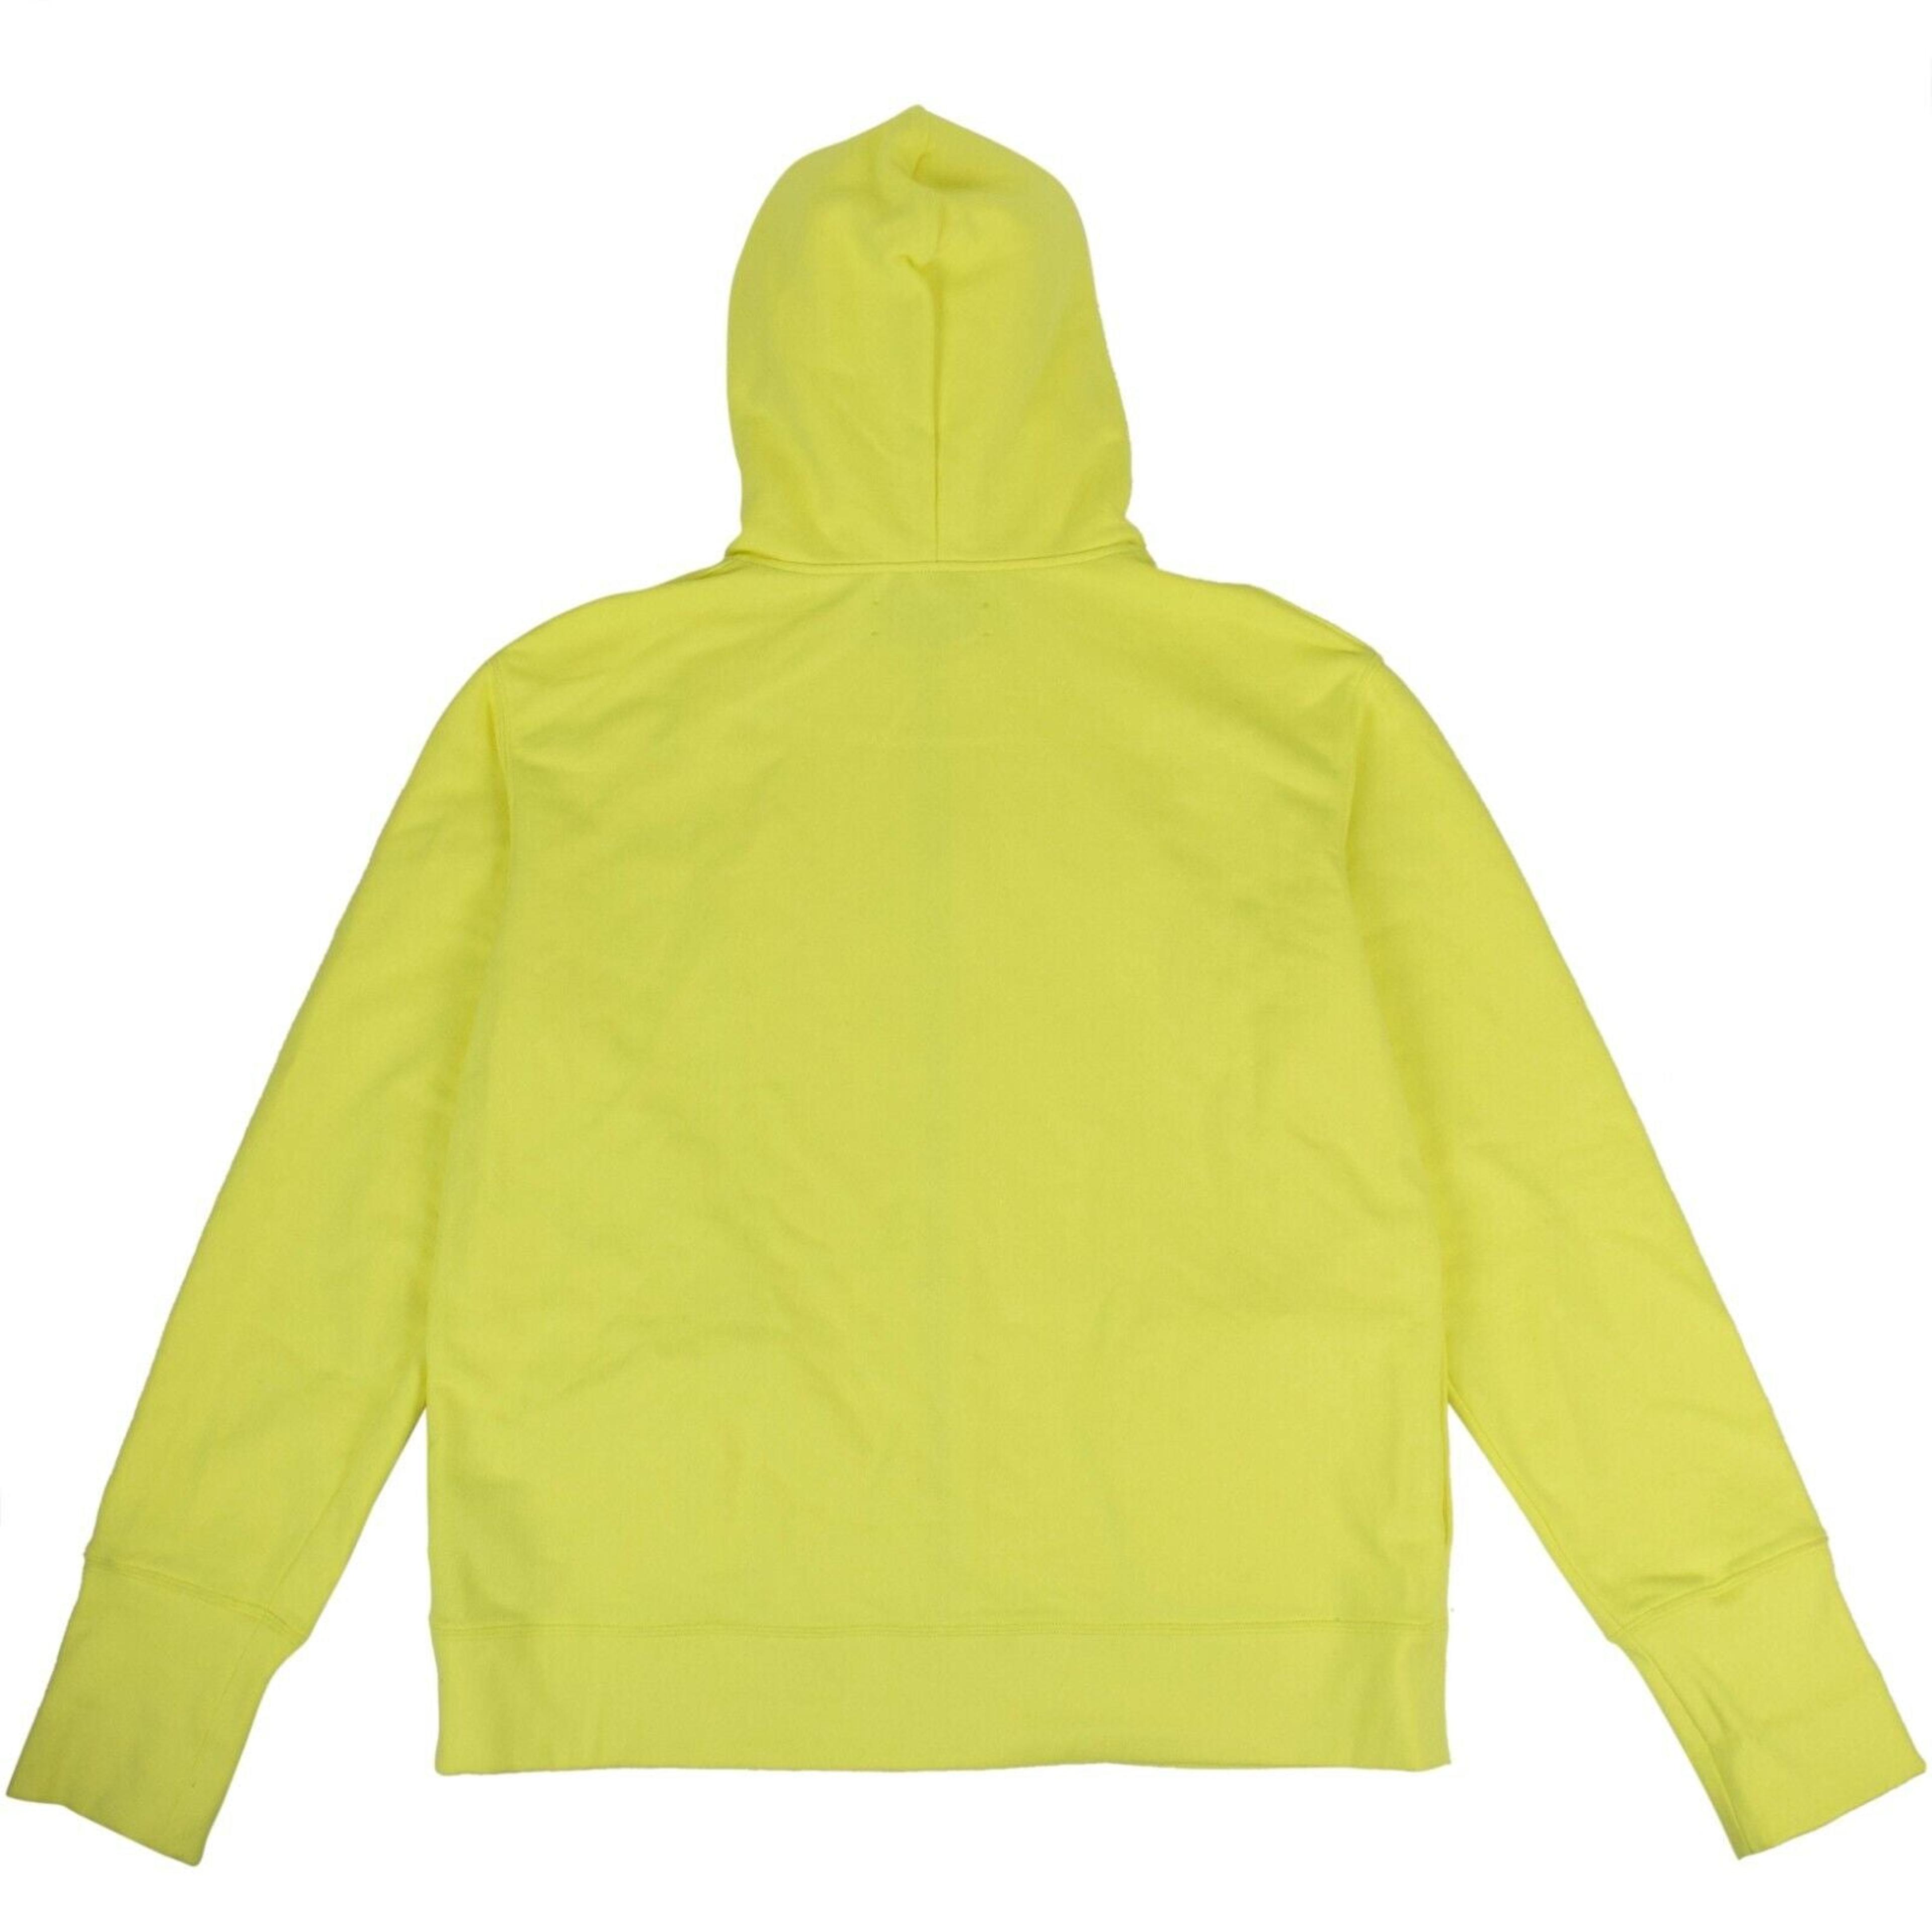 Alternate View 3 of Neon Yellow Full Zip Sweatshirt